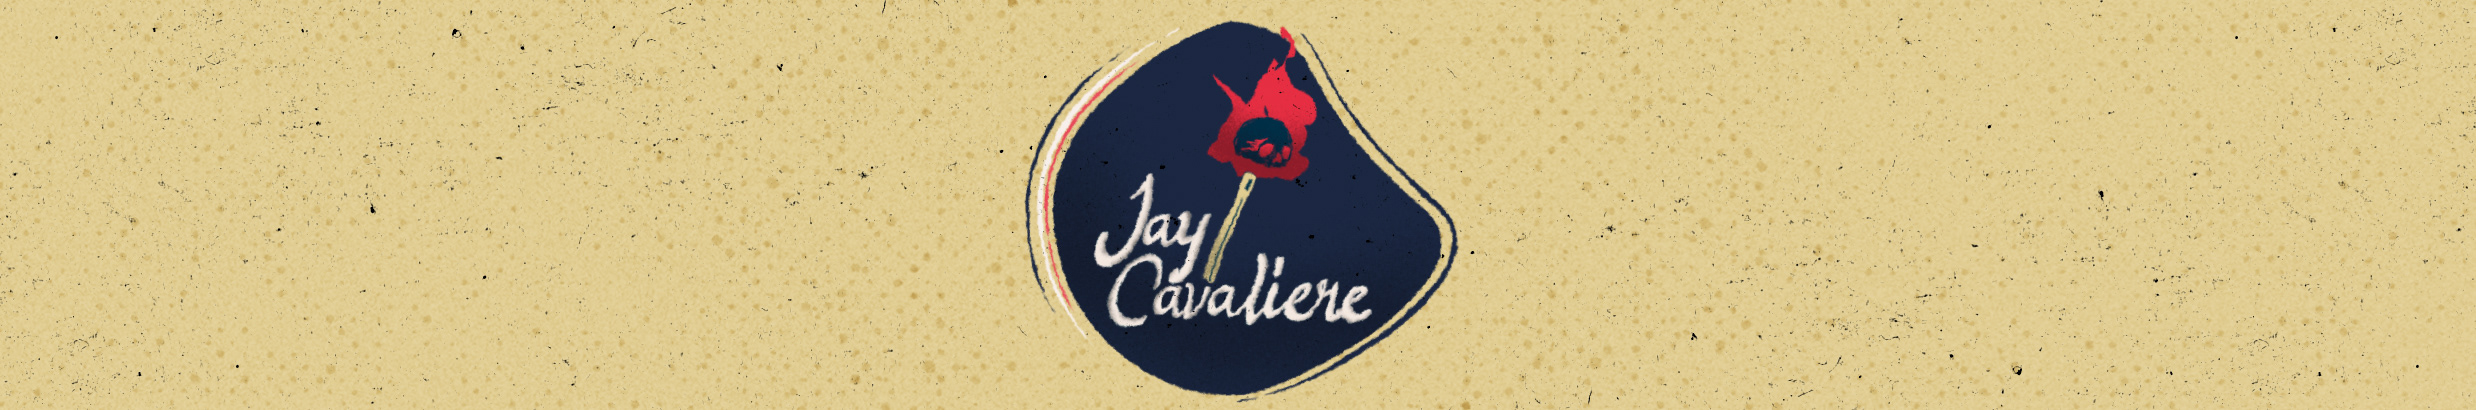 Profielbanner van Jay Cavaliere